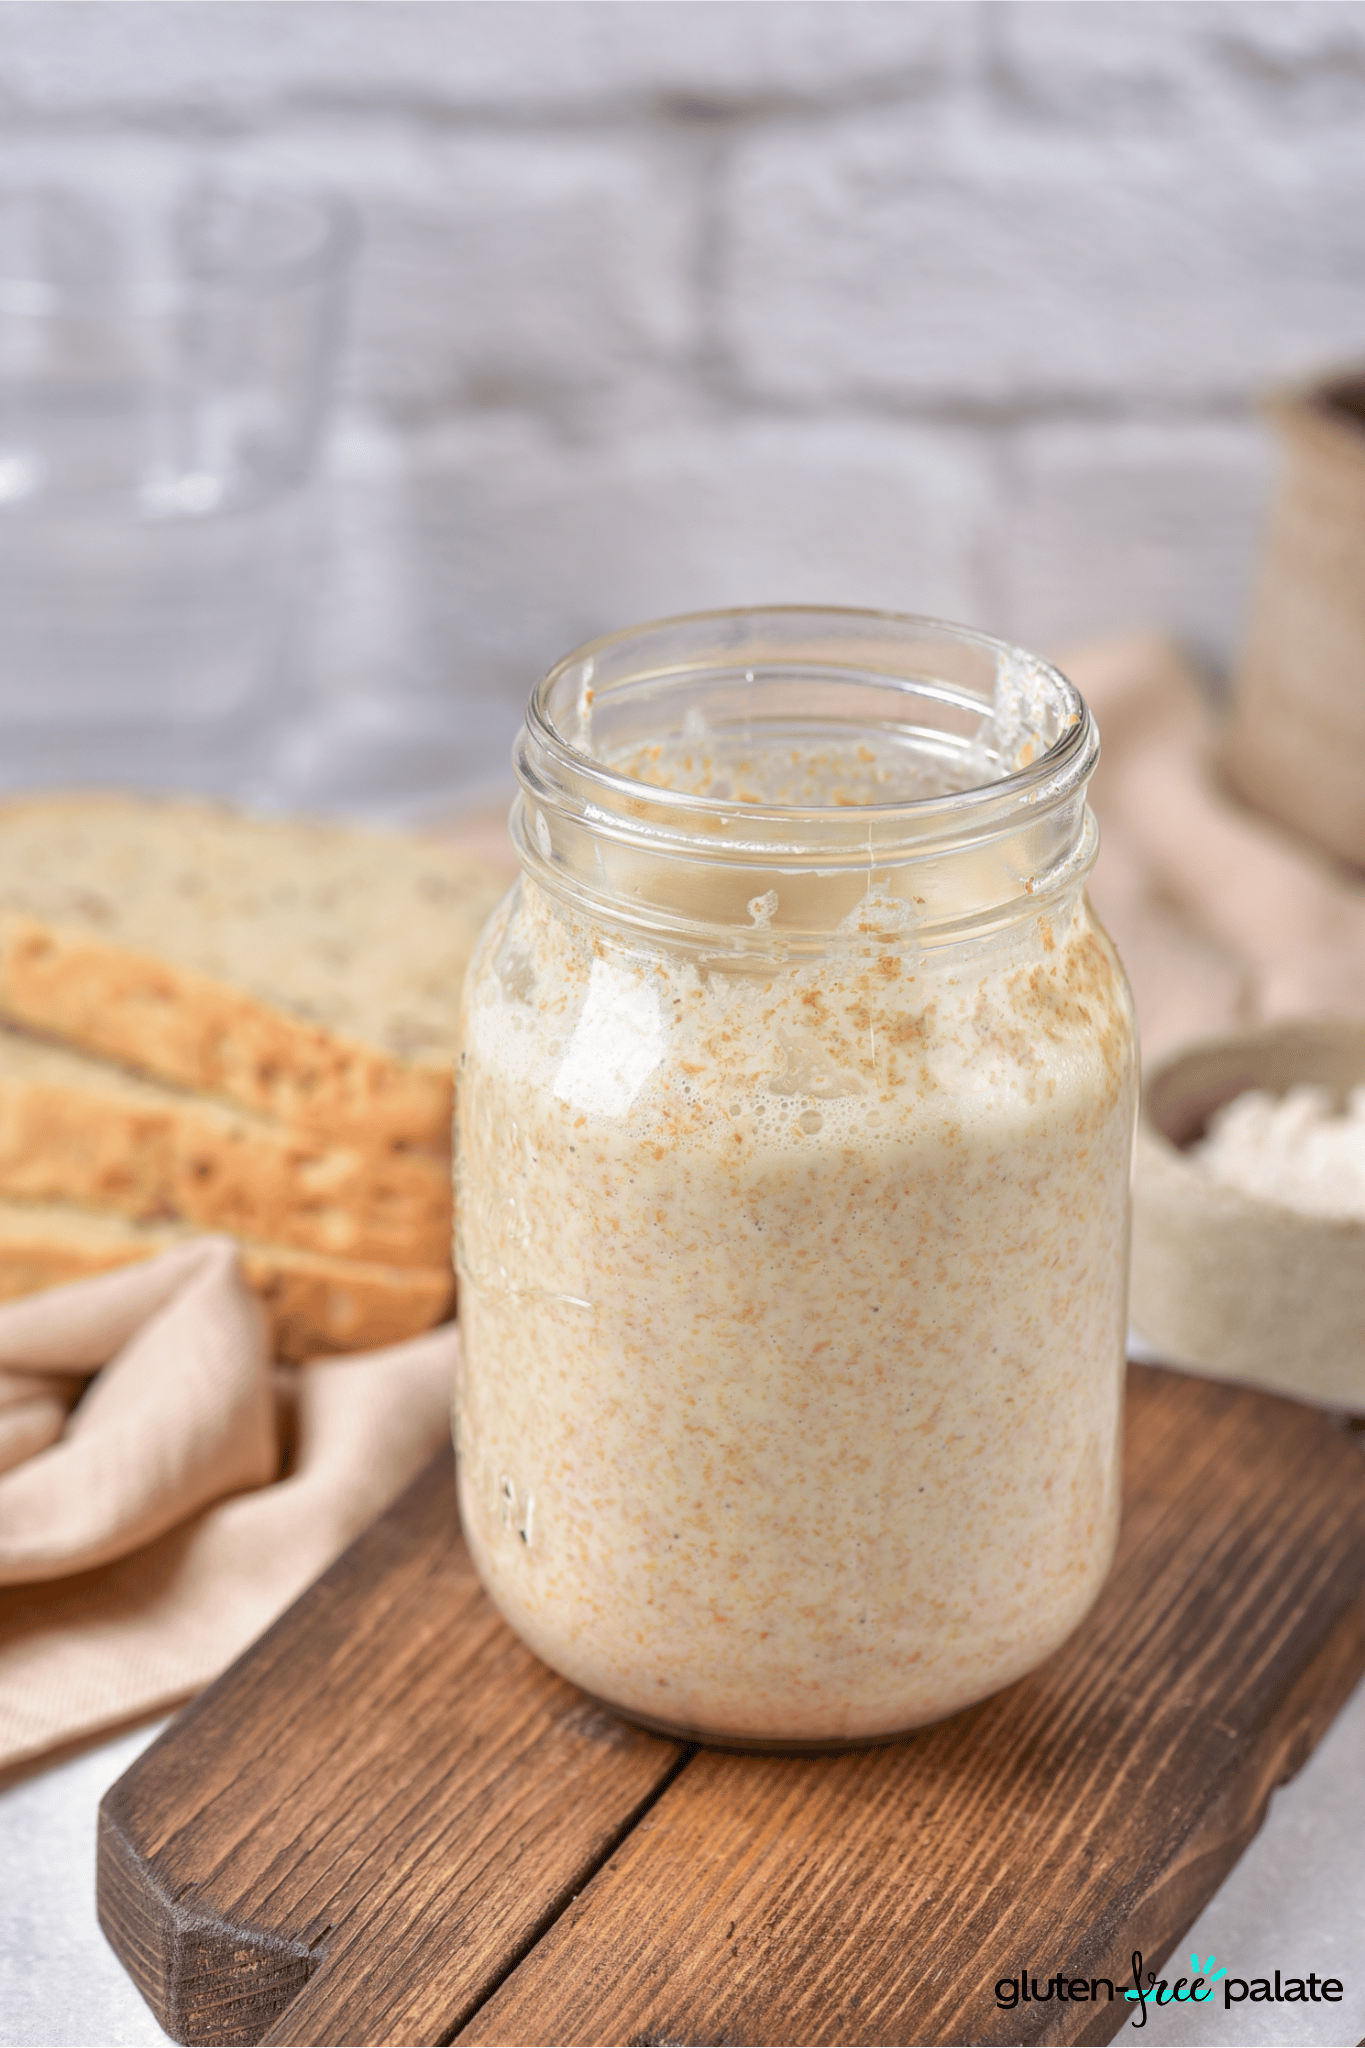 gluten-free sourdough starter in a jar.